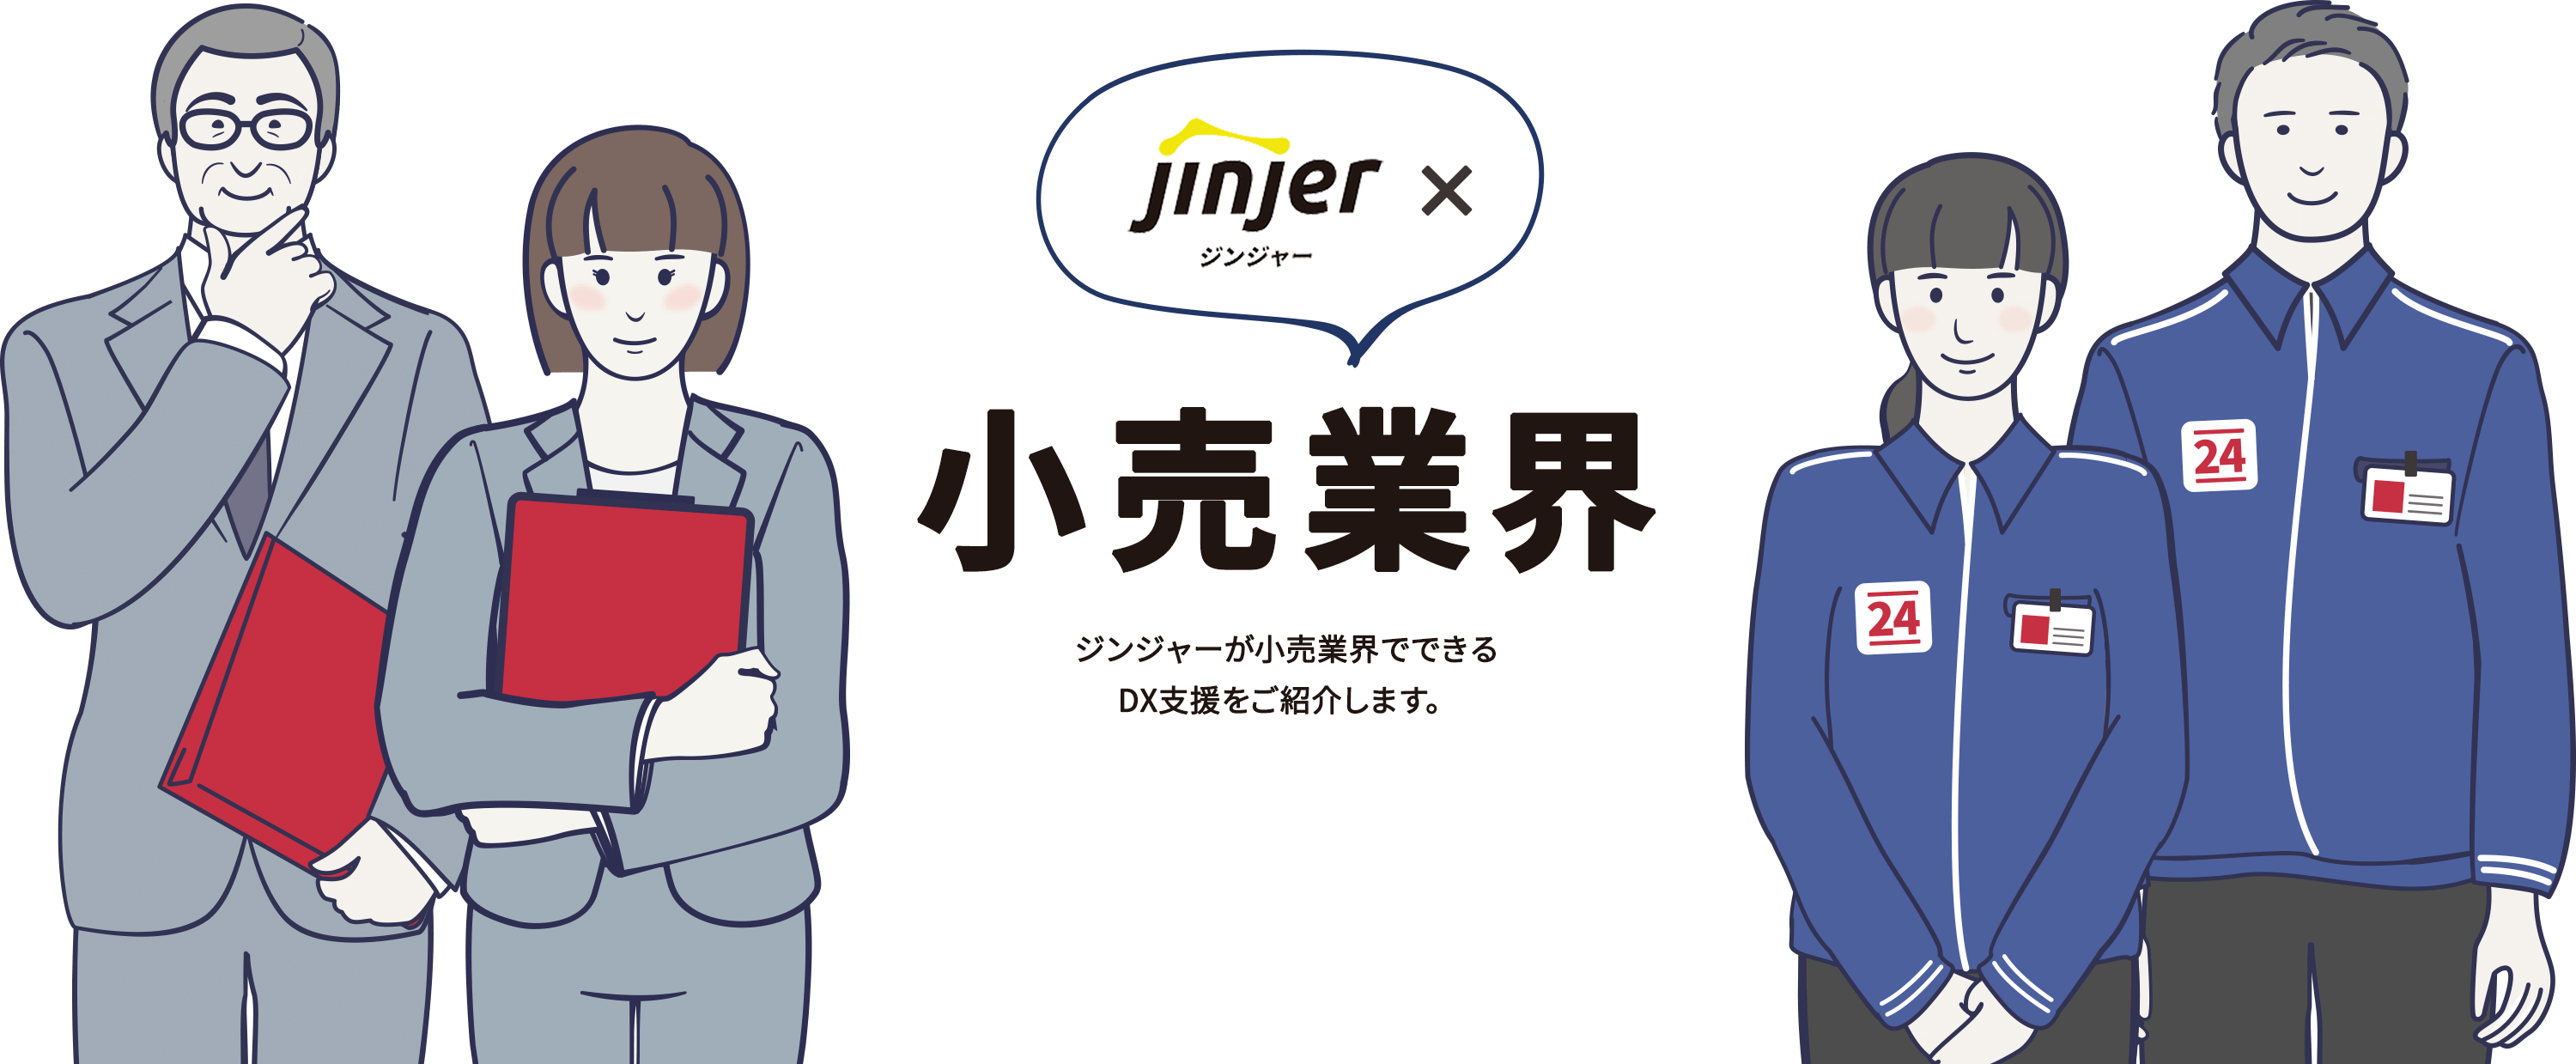 ジンジャー×小売業界 ジンジャーが小売業界でできるDX支援をご紹介します。